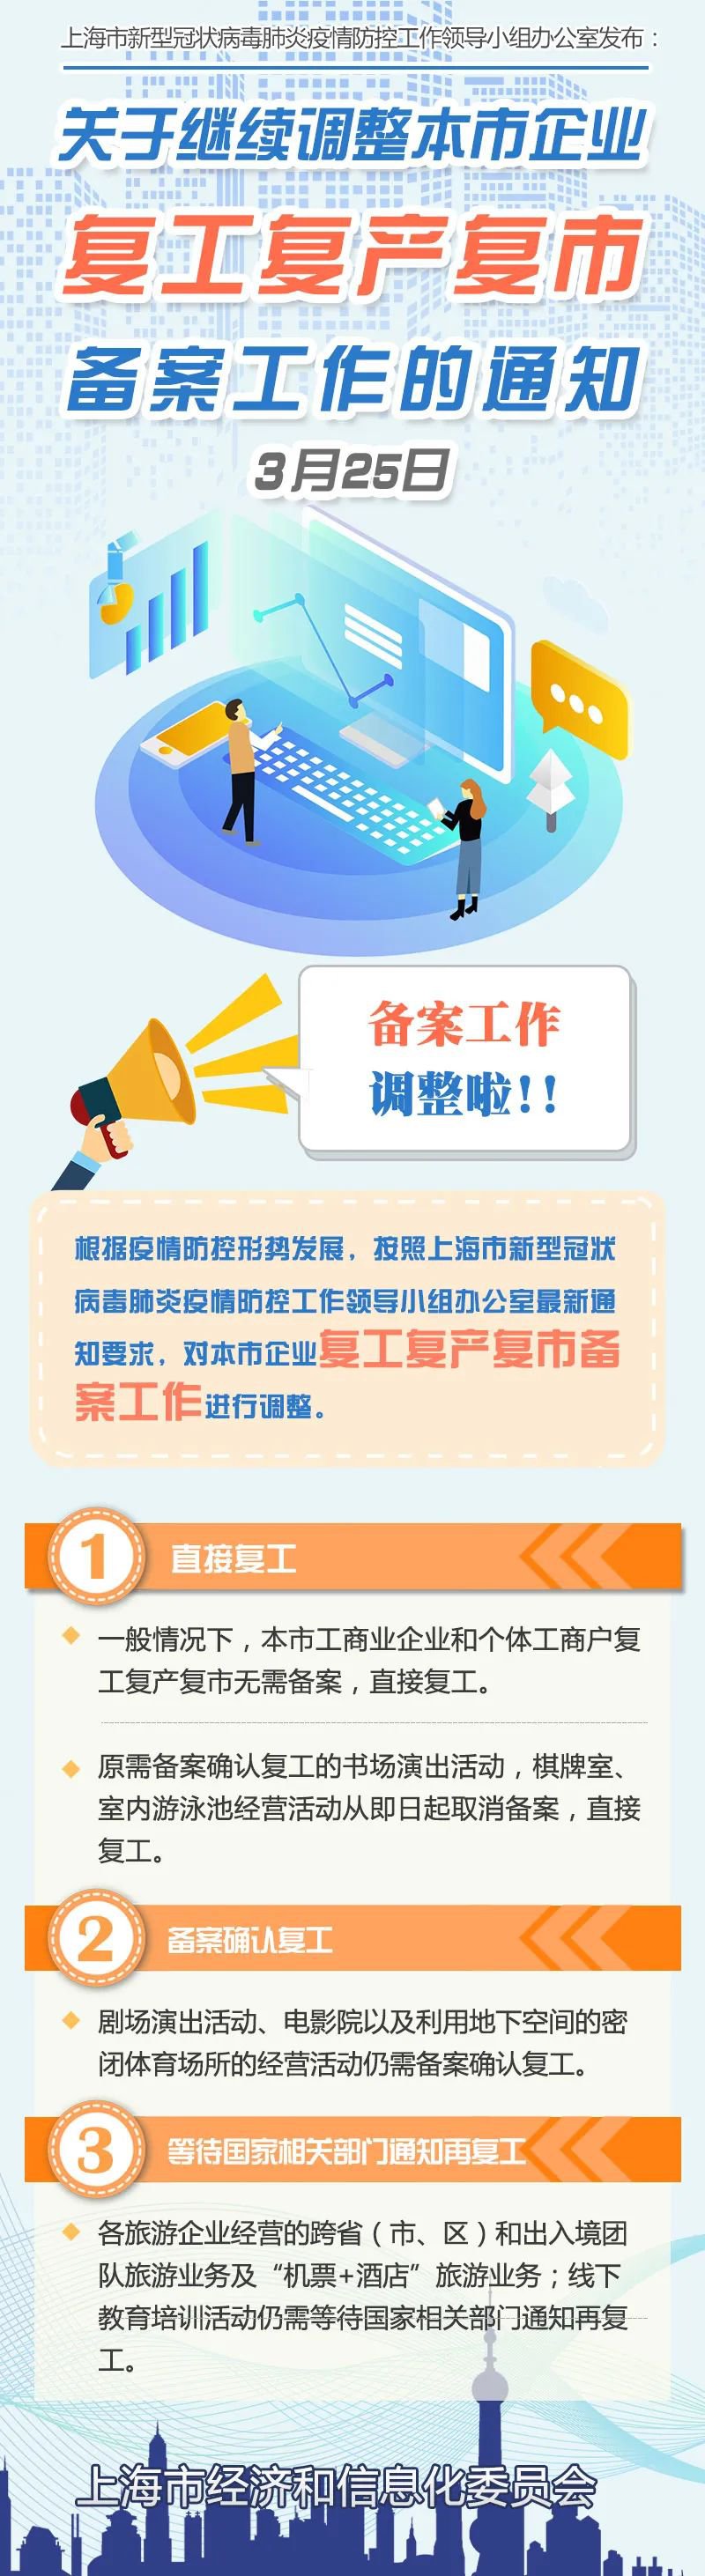 上海企业复工指南5.0版发布 书场棋牌室取消备案